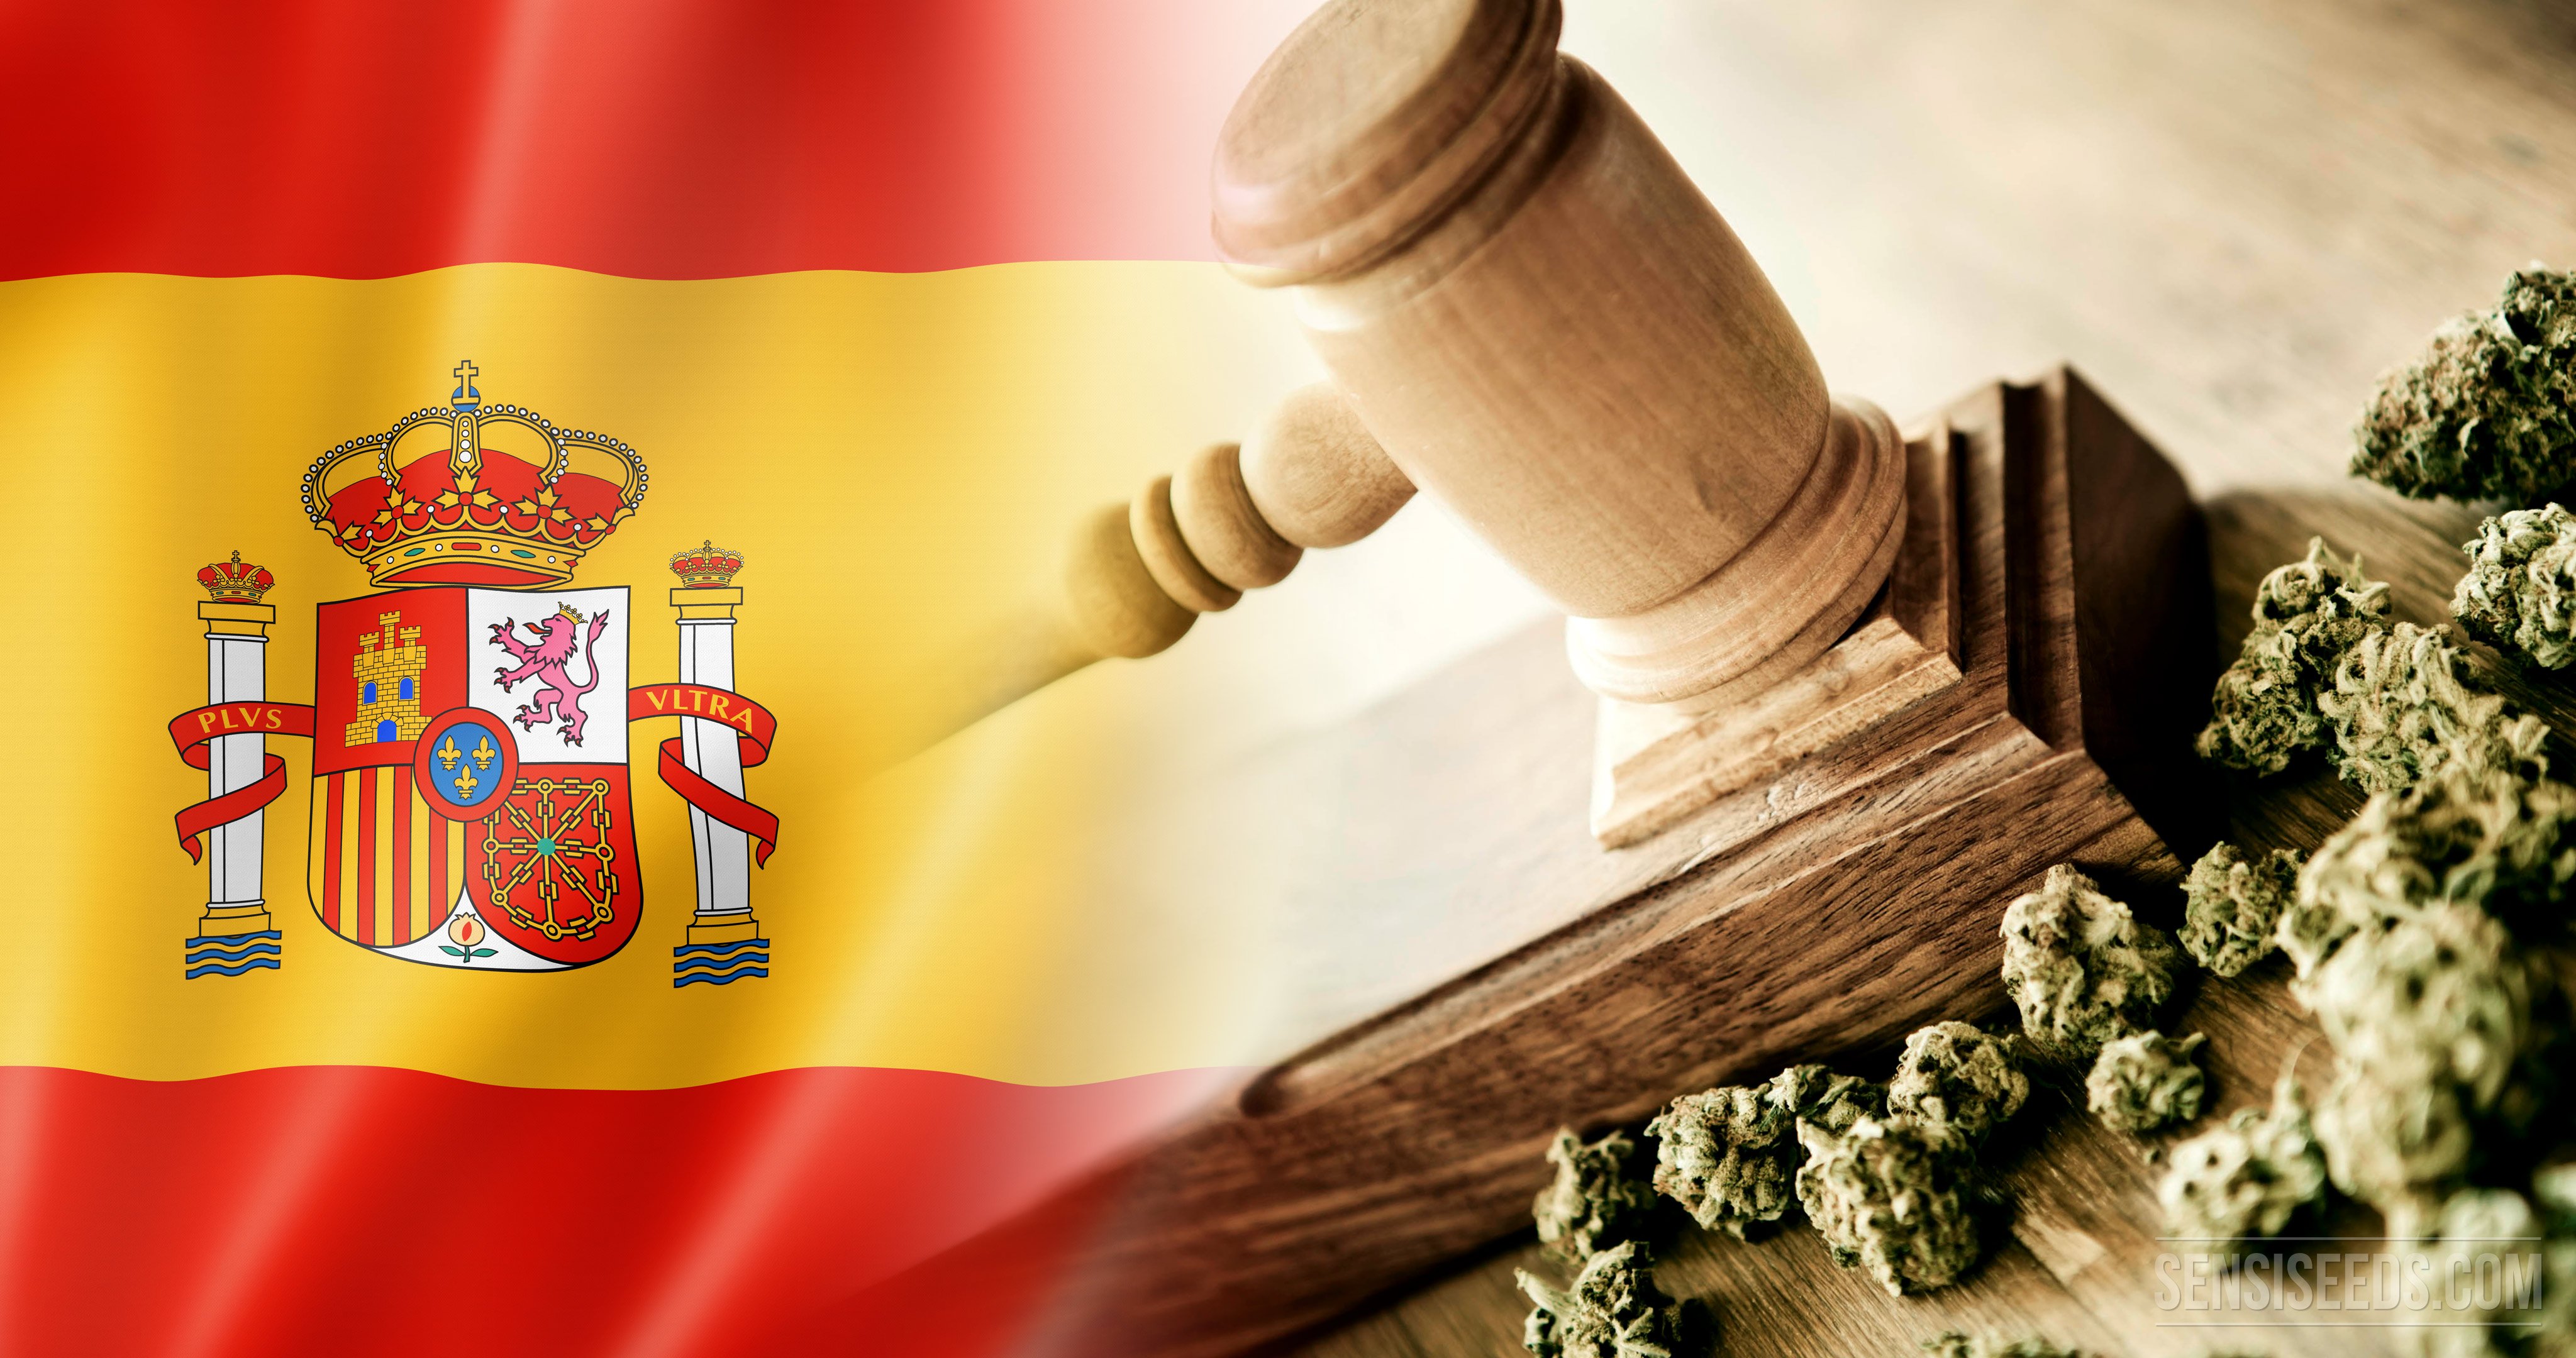 Une ère nouvelle pour les Cannabis Clubs d’Espagne